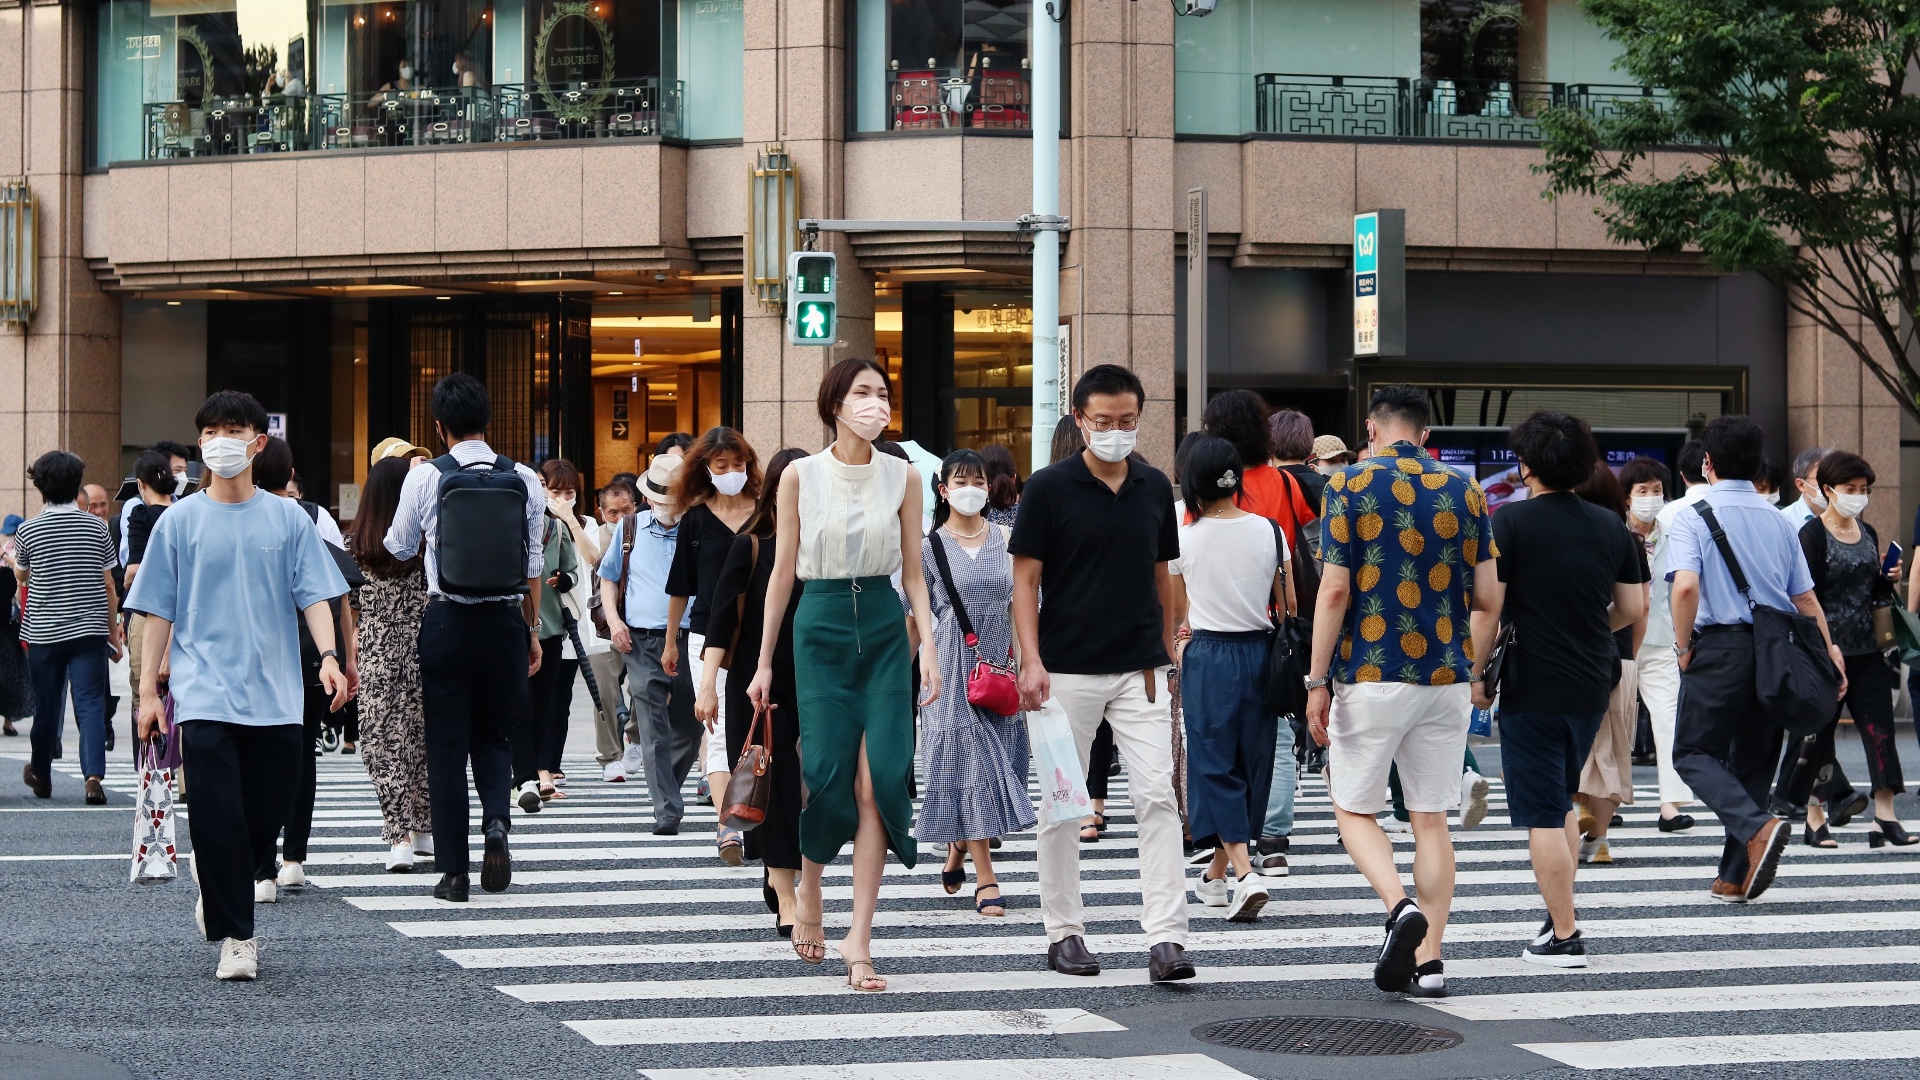 Die Maske im Freien gehört weiterhin zum Alltagsbild in Japan.